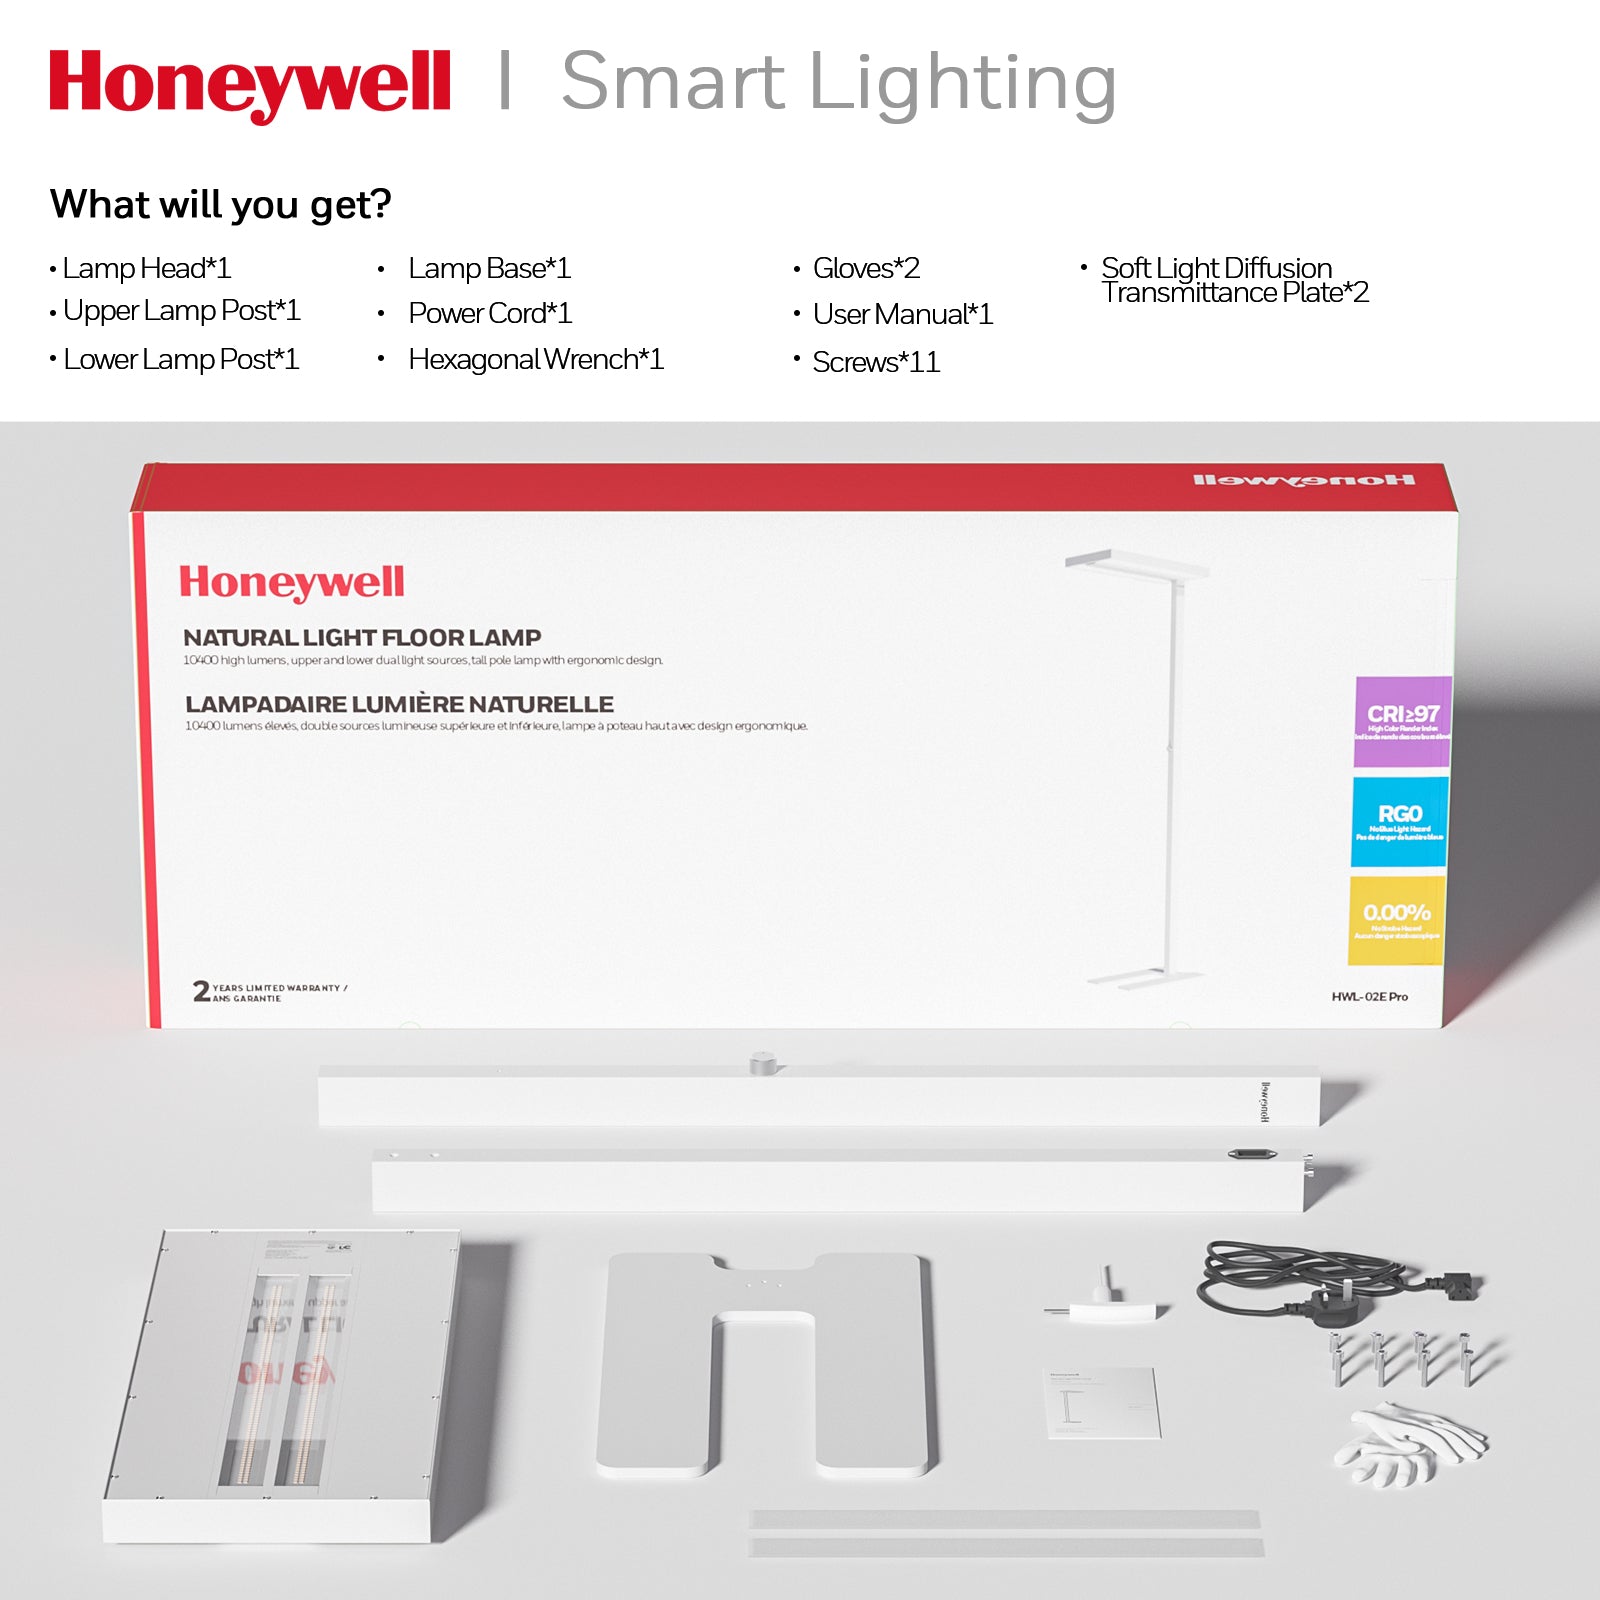 Lampada da terra a luce naturale Honeywell HWL-02E Pro